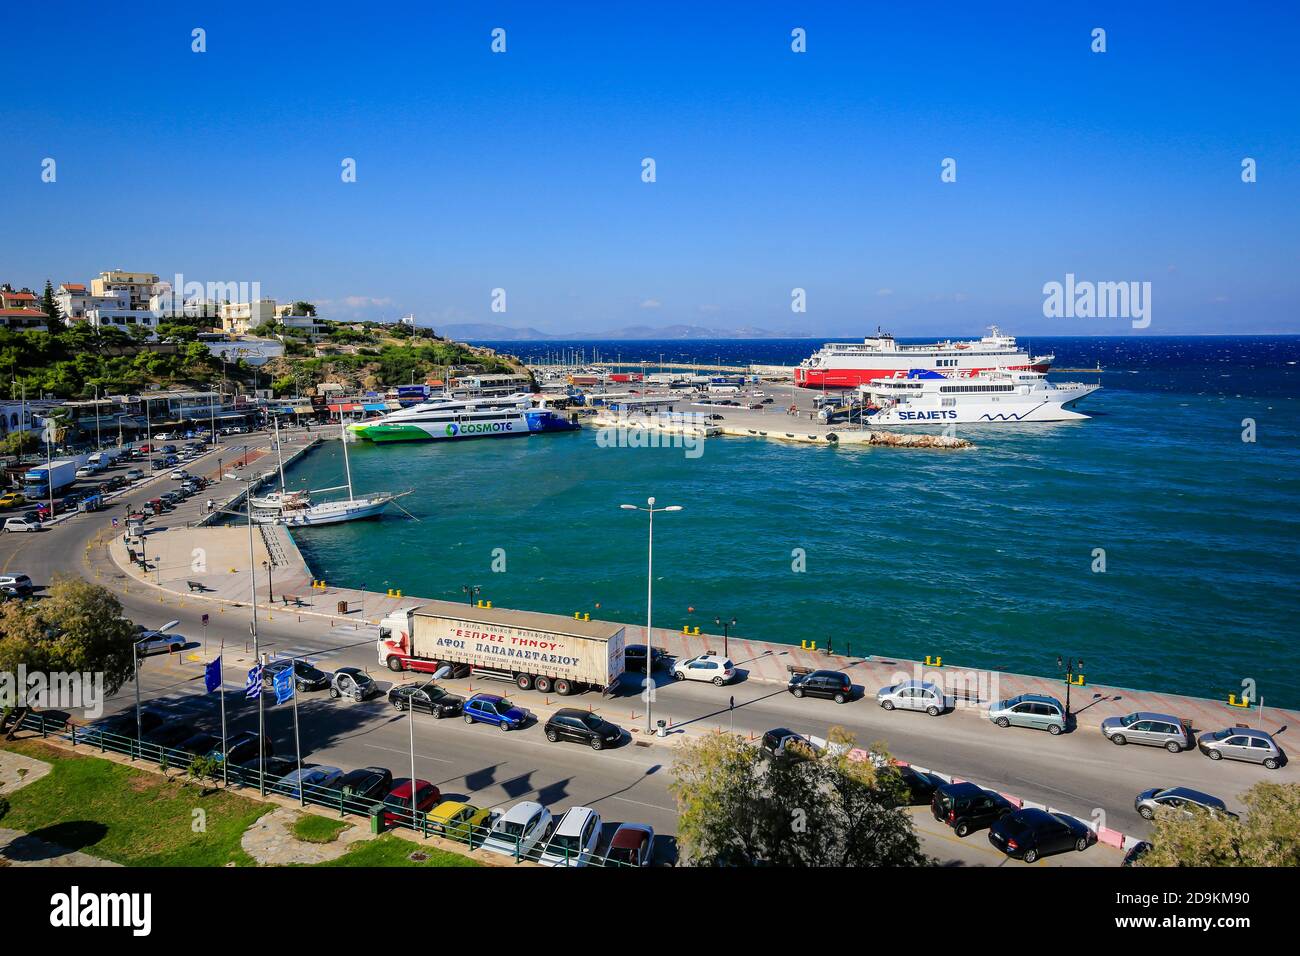 Rafina, Attica, Griechenland - Fähren der Seajets und Fast Ferries Linien warten im Hafen von Rafina auf die Überfahrt zu den Kykladen-Inseln. Stockfoto